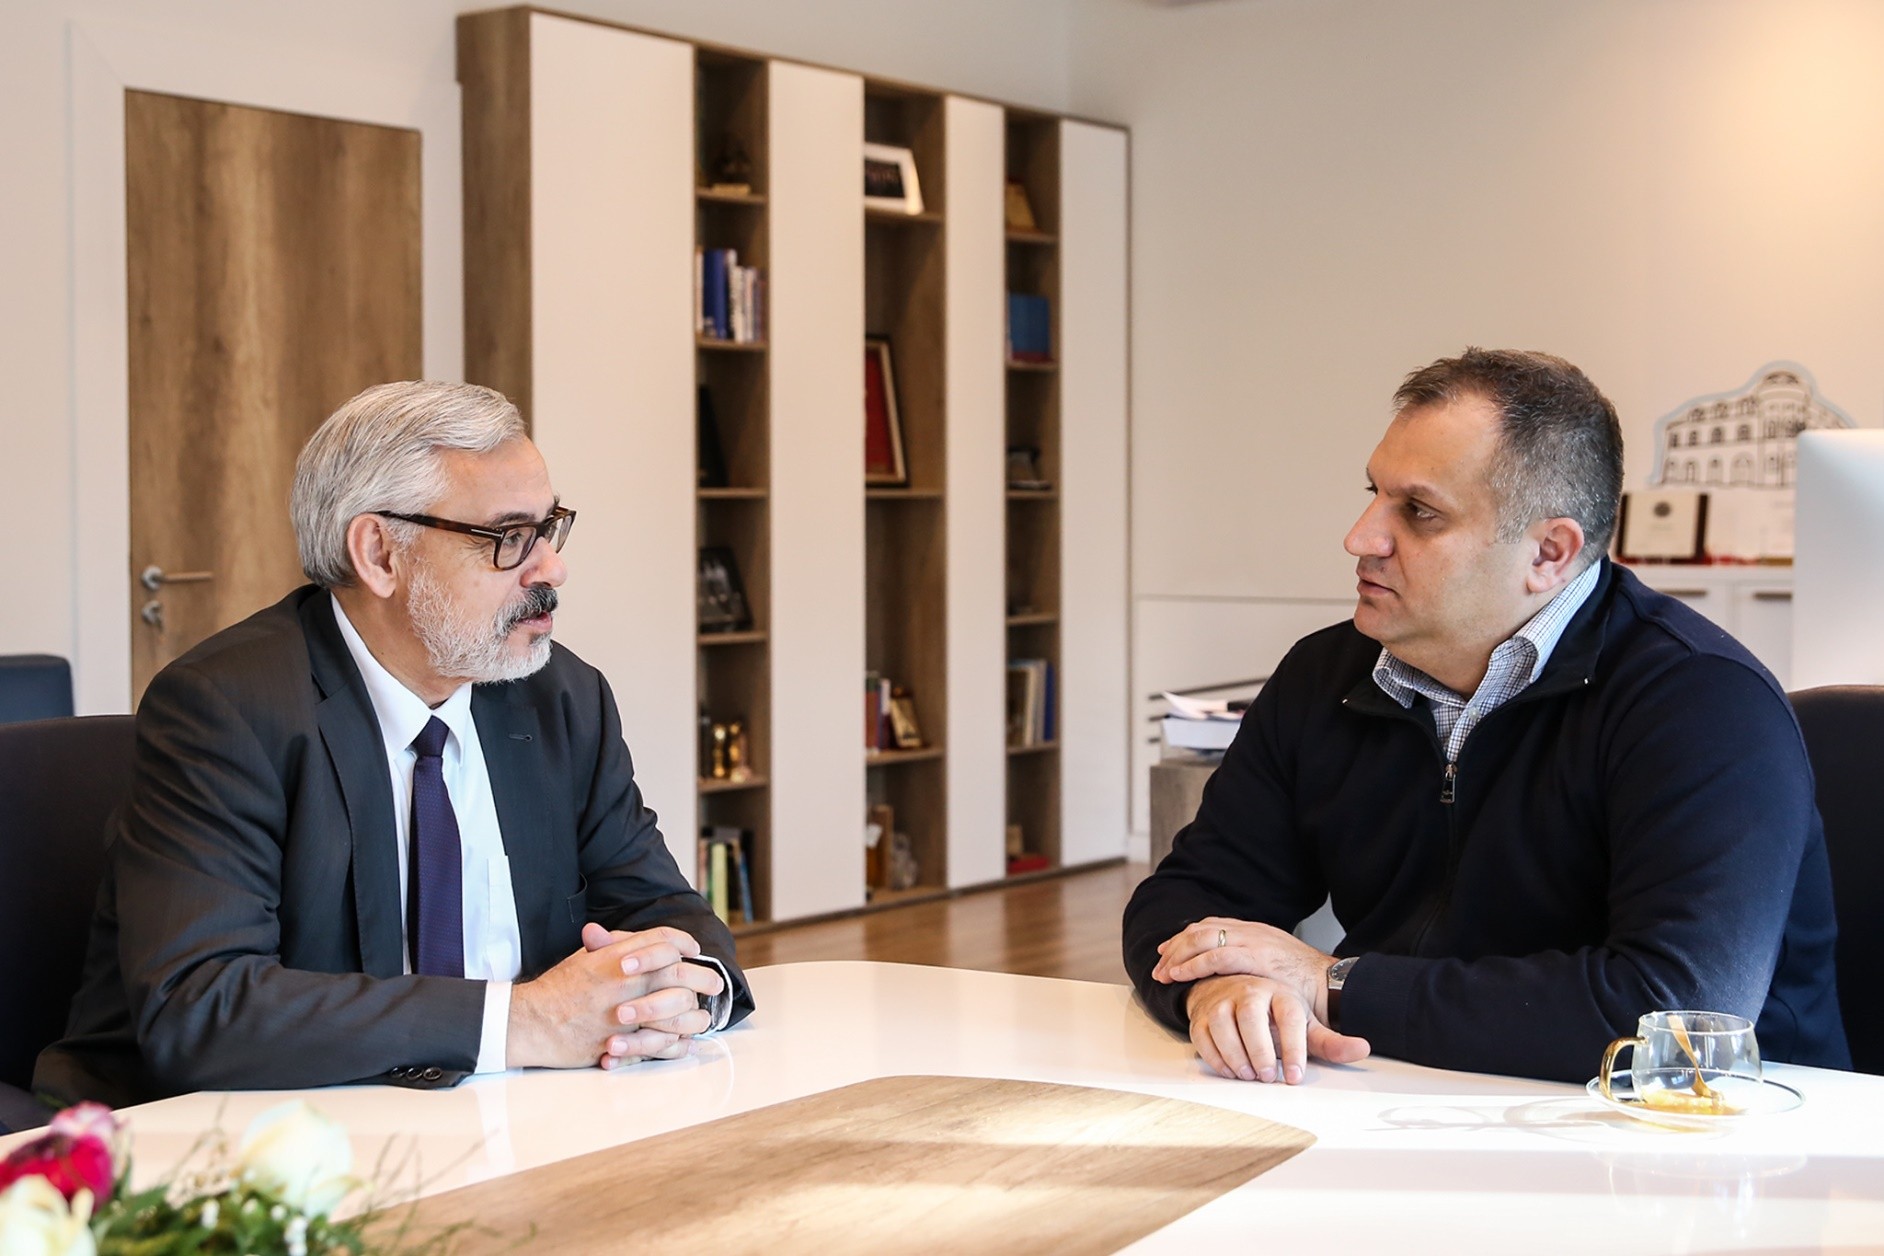 Thellohet bashkëpunimi mes Komunës e Prishtinës dhe Ambasadës Zvicrane  